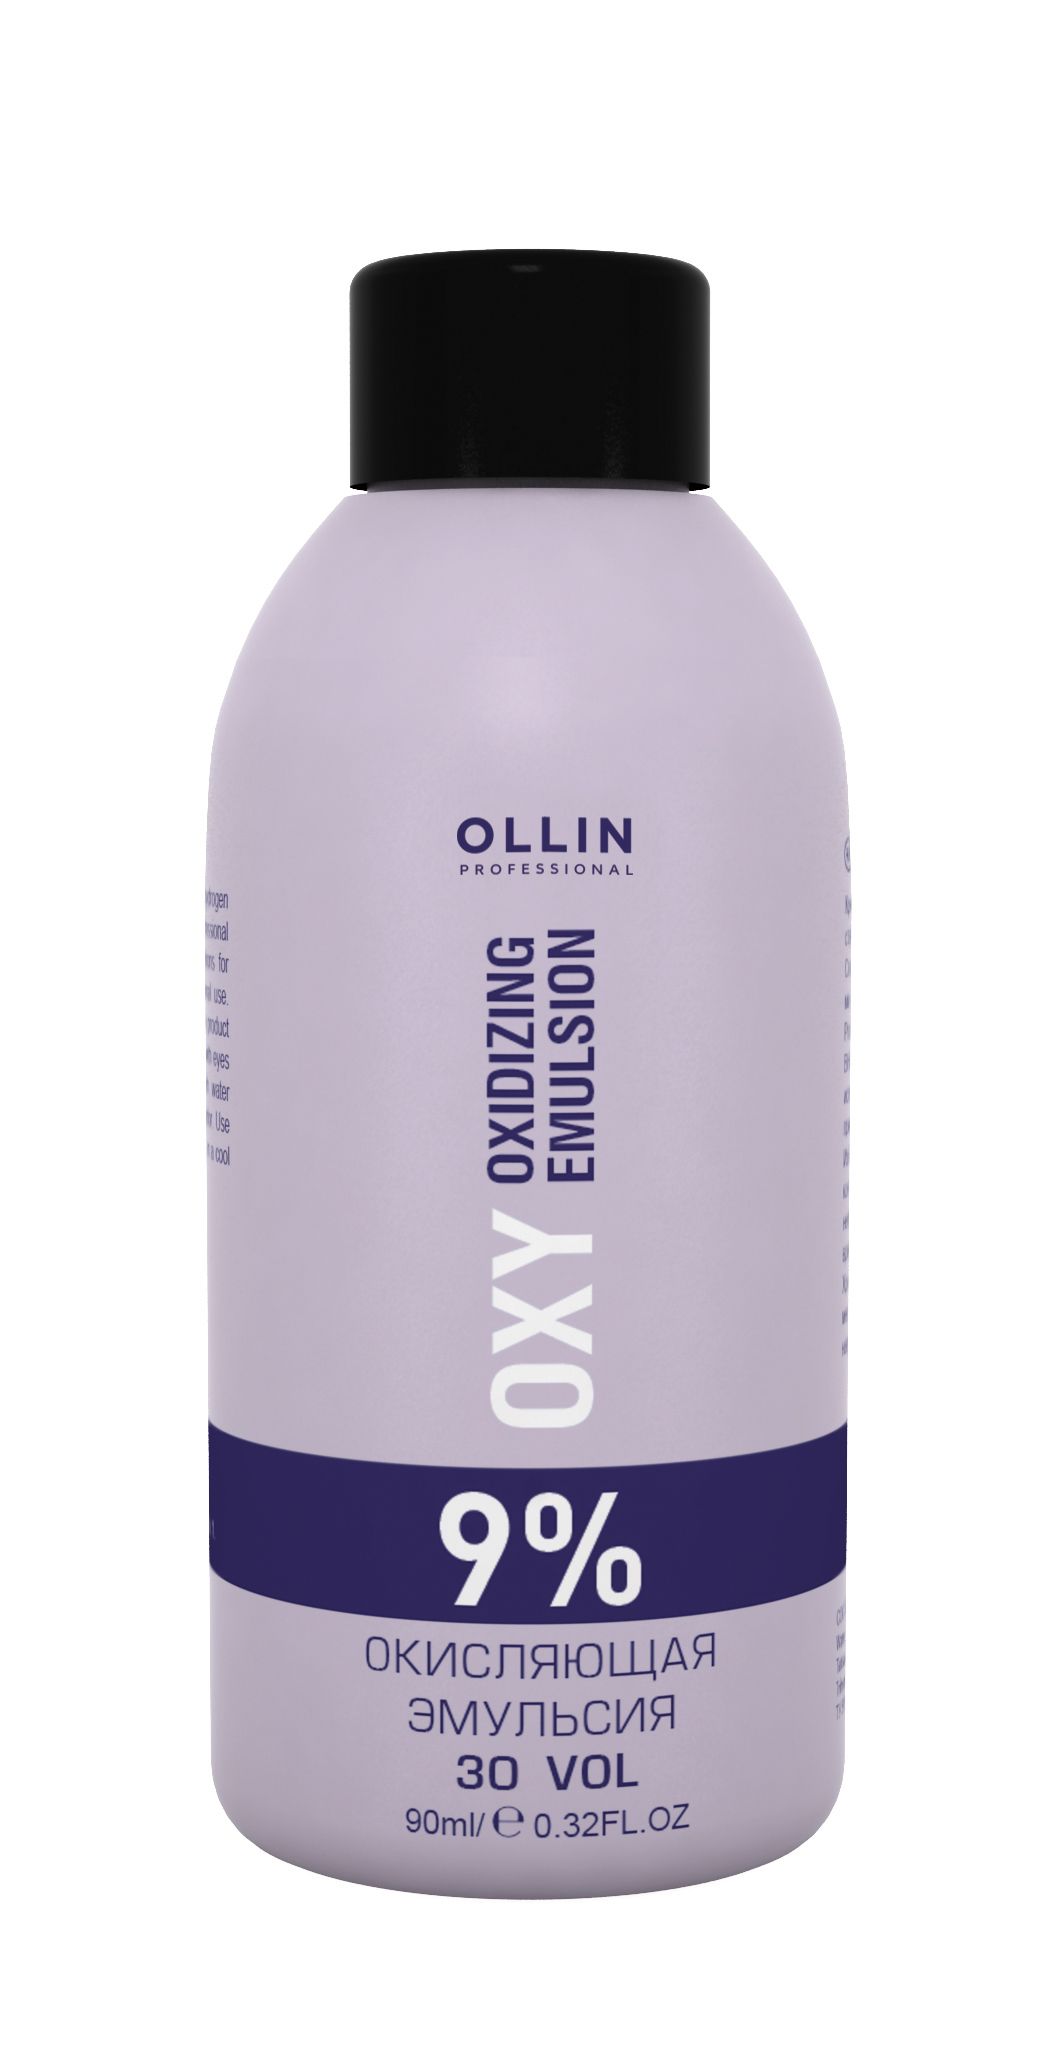 Ollin Professional Performance OXY Oxidizing Emulsion 9% 30vol. Окисляющая эмульсия 90 мл